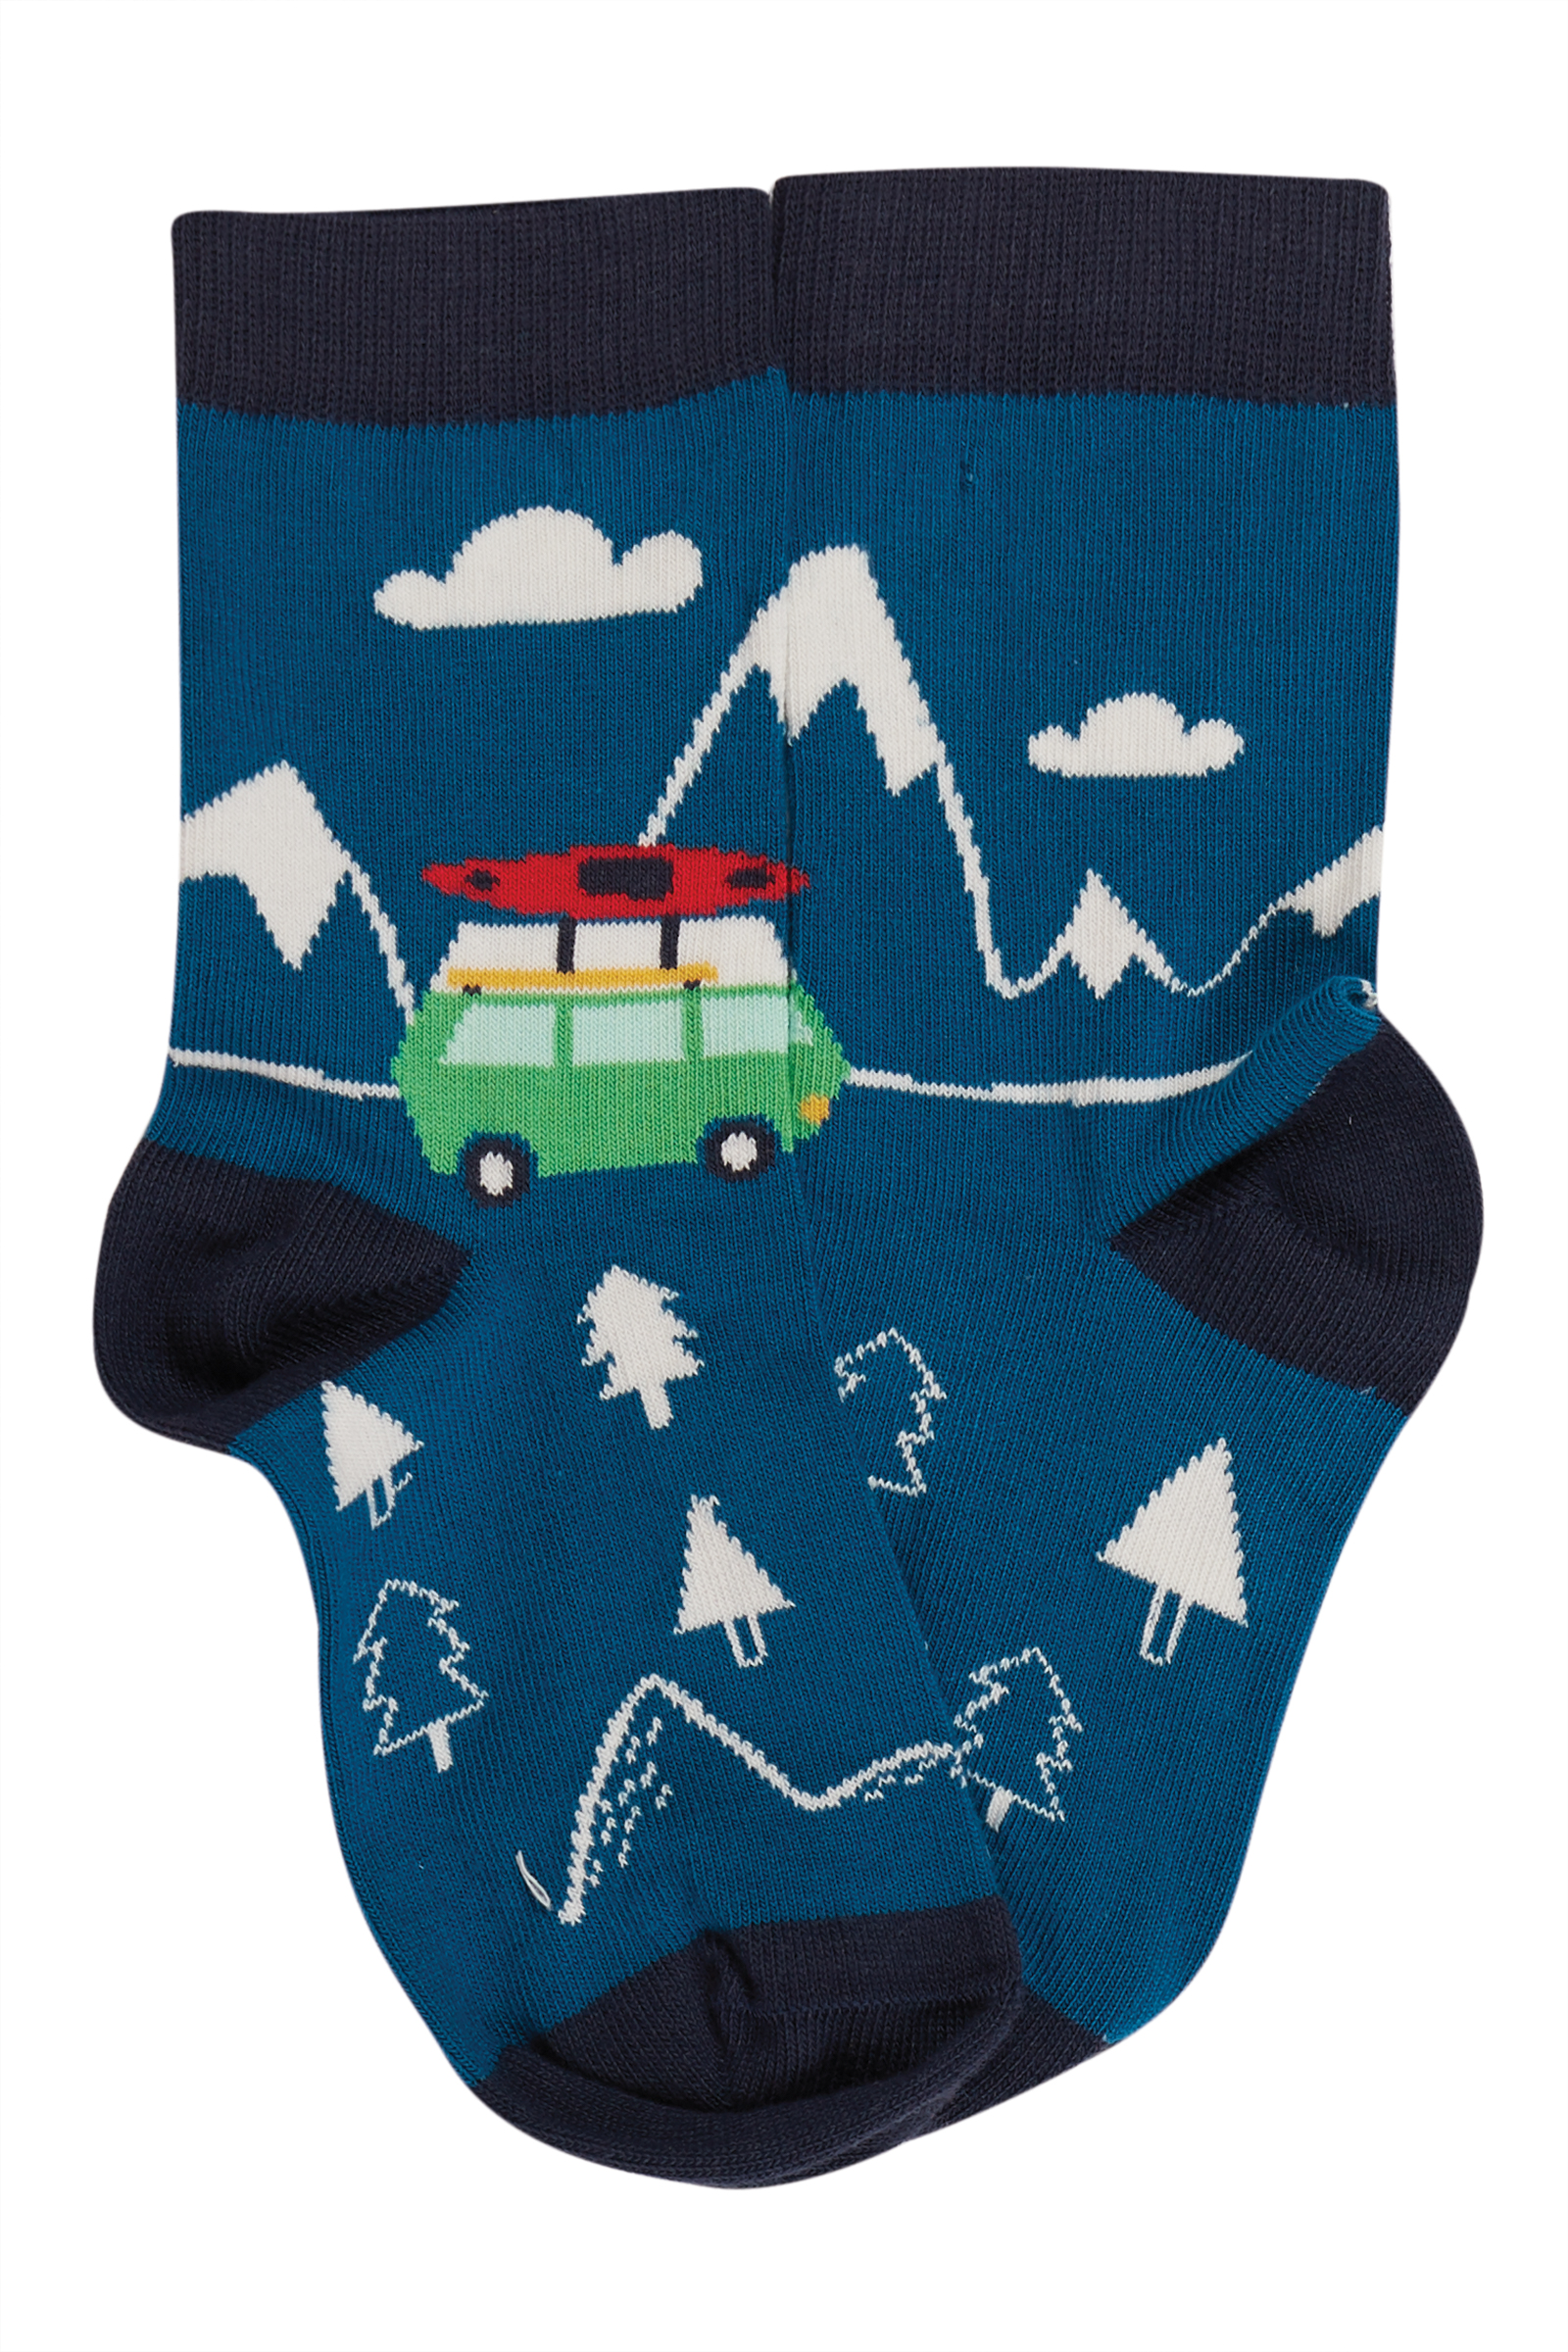 Kinder-Socken im 3er-Pack mit Husky und Schneelandschaft